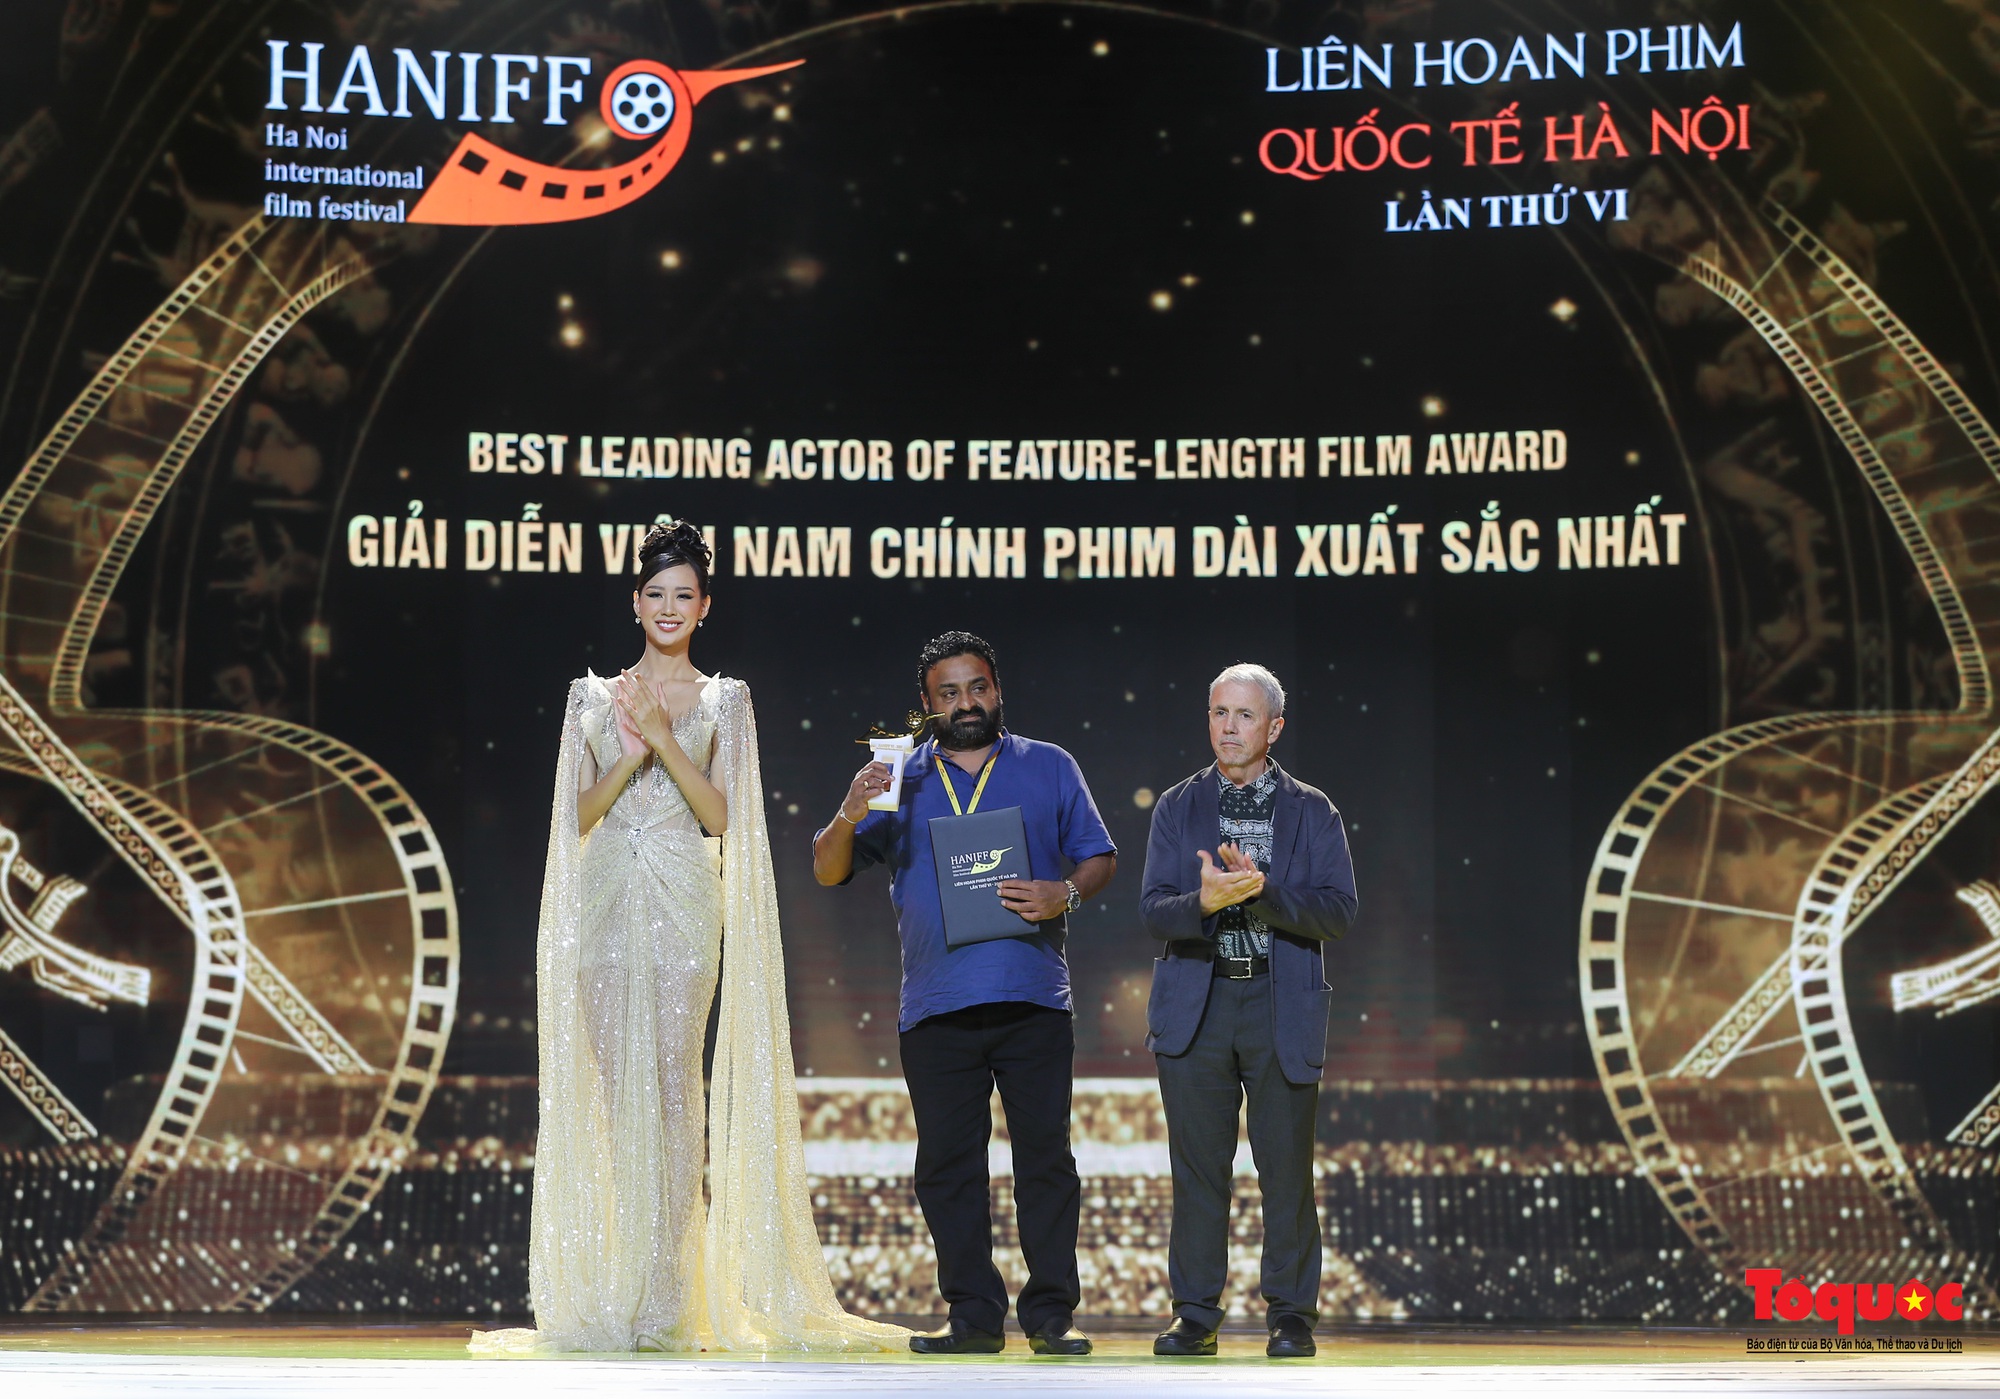 Bế mạc HANIFF 2022: 12 hàng mục giải thưởng trao cho các bộ phim, diễn viên, đạo diễn xuất sắc - Ảnh 10.